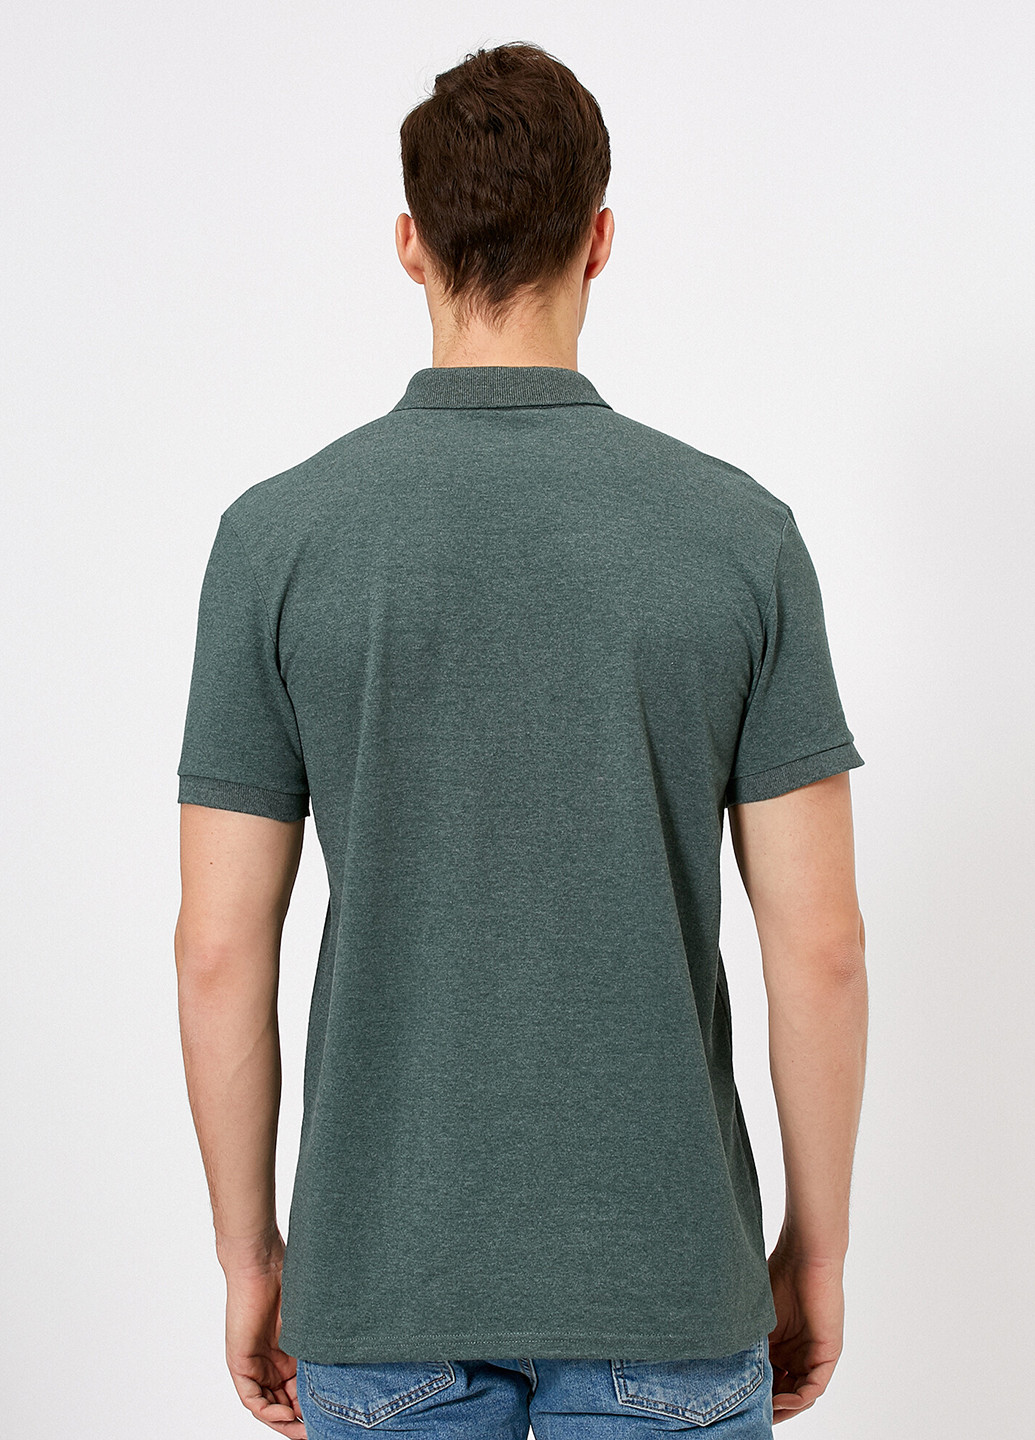 Серо-зеленая футболка-поло для мужчин KOTON